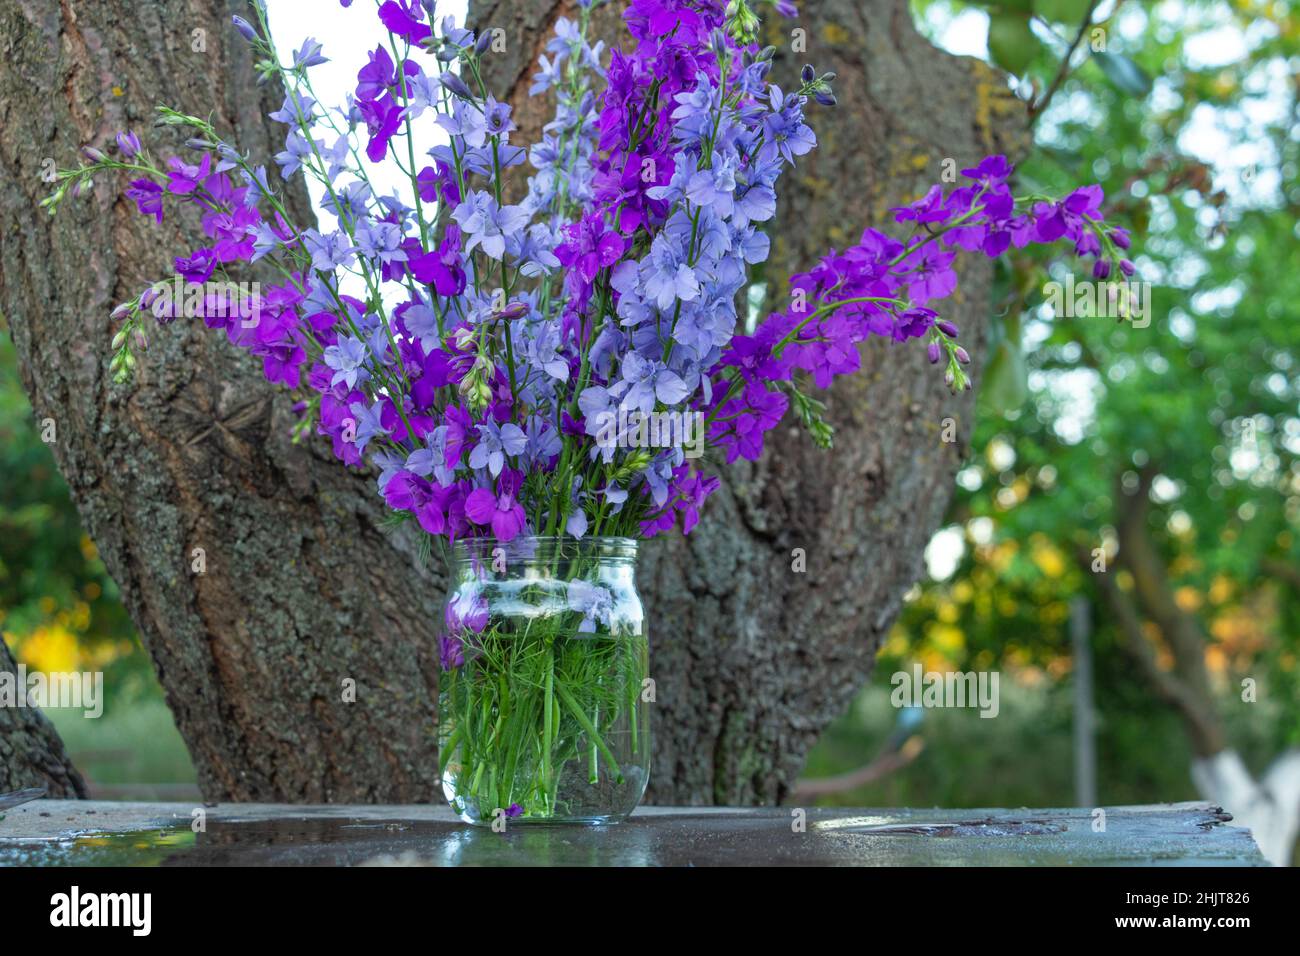 Schöner Strauß von Hausblumen - blaues und violettes Delphinium in einem Glas Wasser Stockfoto